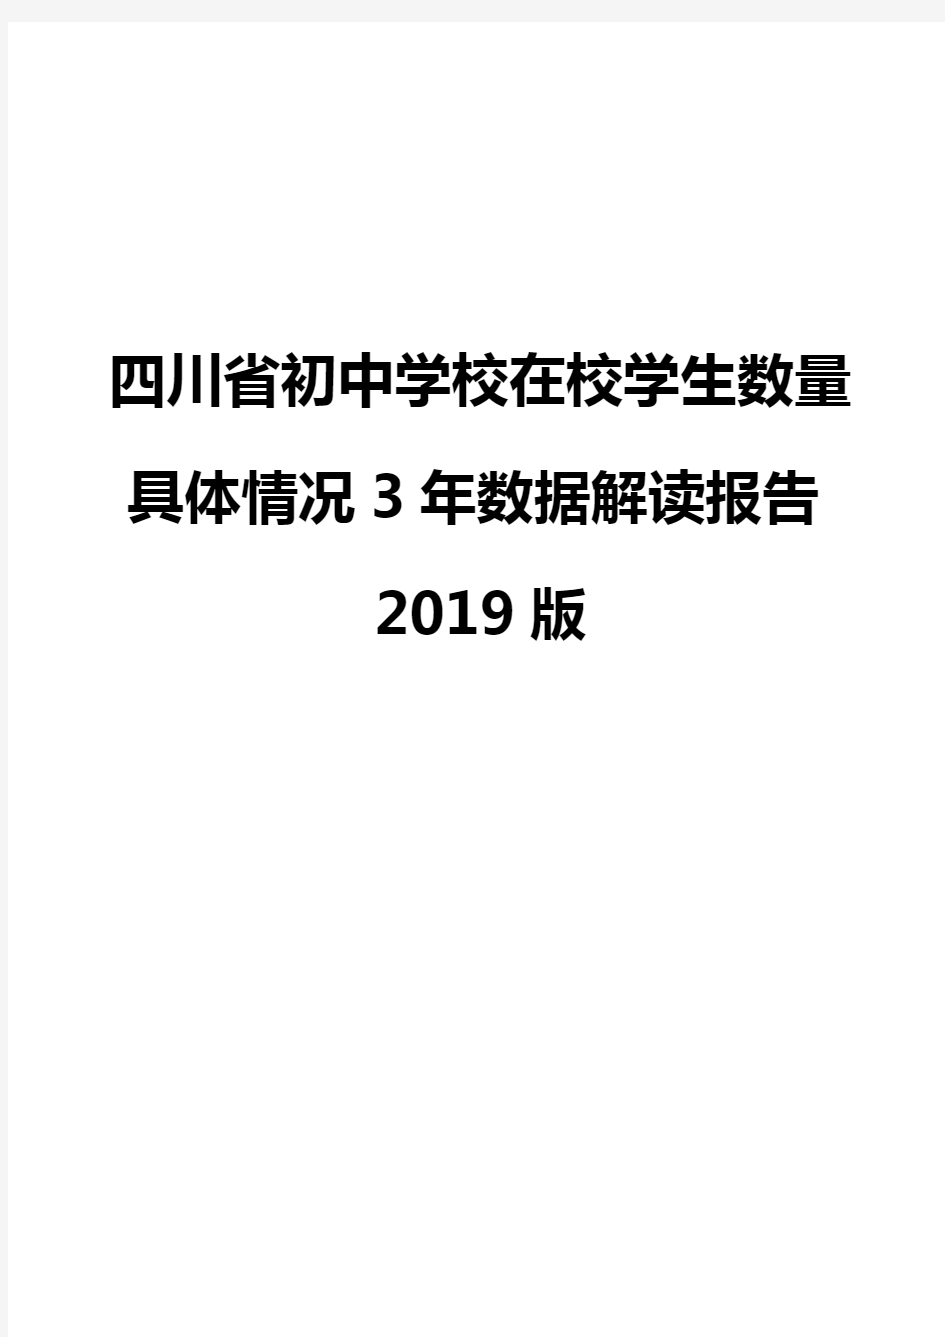 四川省初中学校在校学生数量具体情况3年数据解读报告2019版